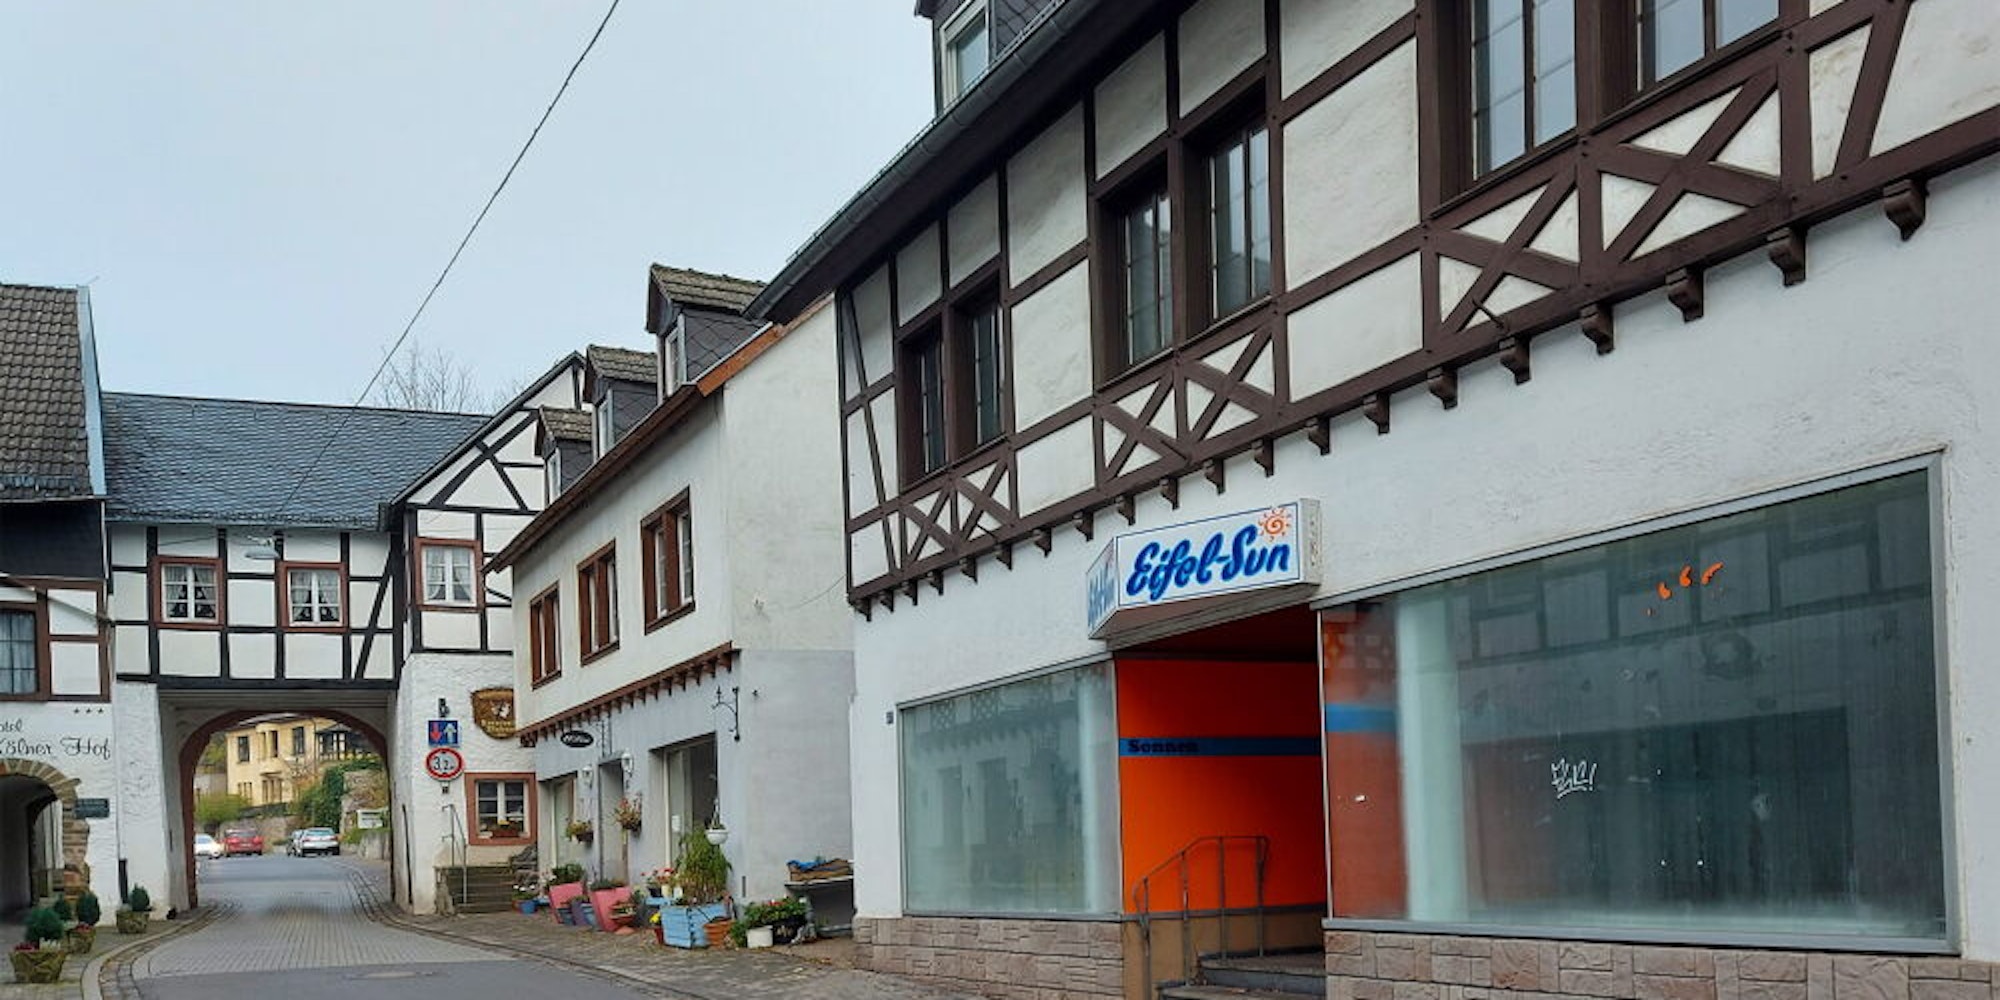 Trauriger Anblick unweit des Georgstores in der Ahrstraße von Blankenheim: Seit Monaten steht dieses große Geschäftslokal leer. Es ist eine von sieben Gewerbeimmobilien entlang der Haupteinkaufsstraße der Gemeinde, die derzeit verwaist sind.